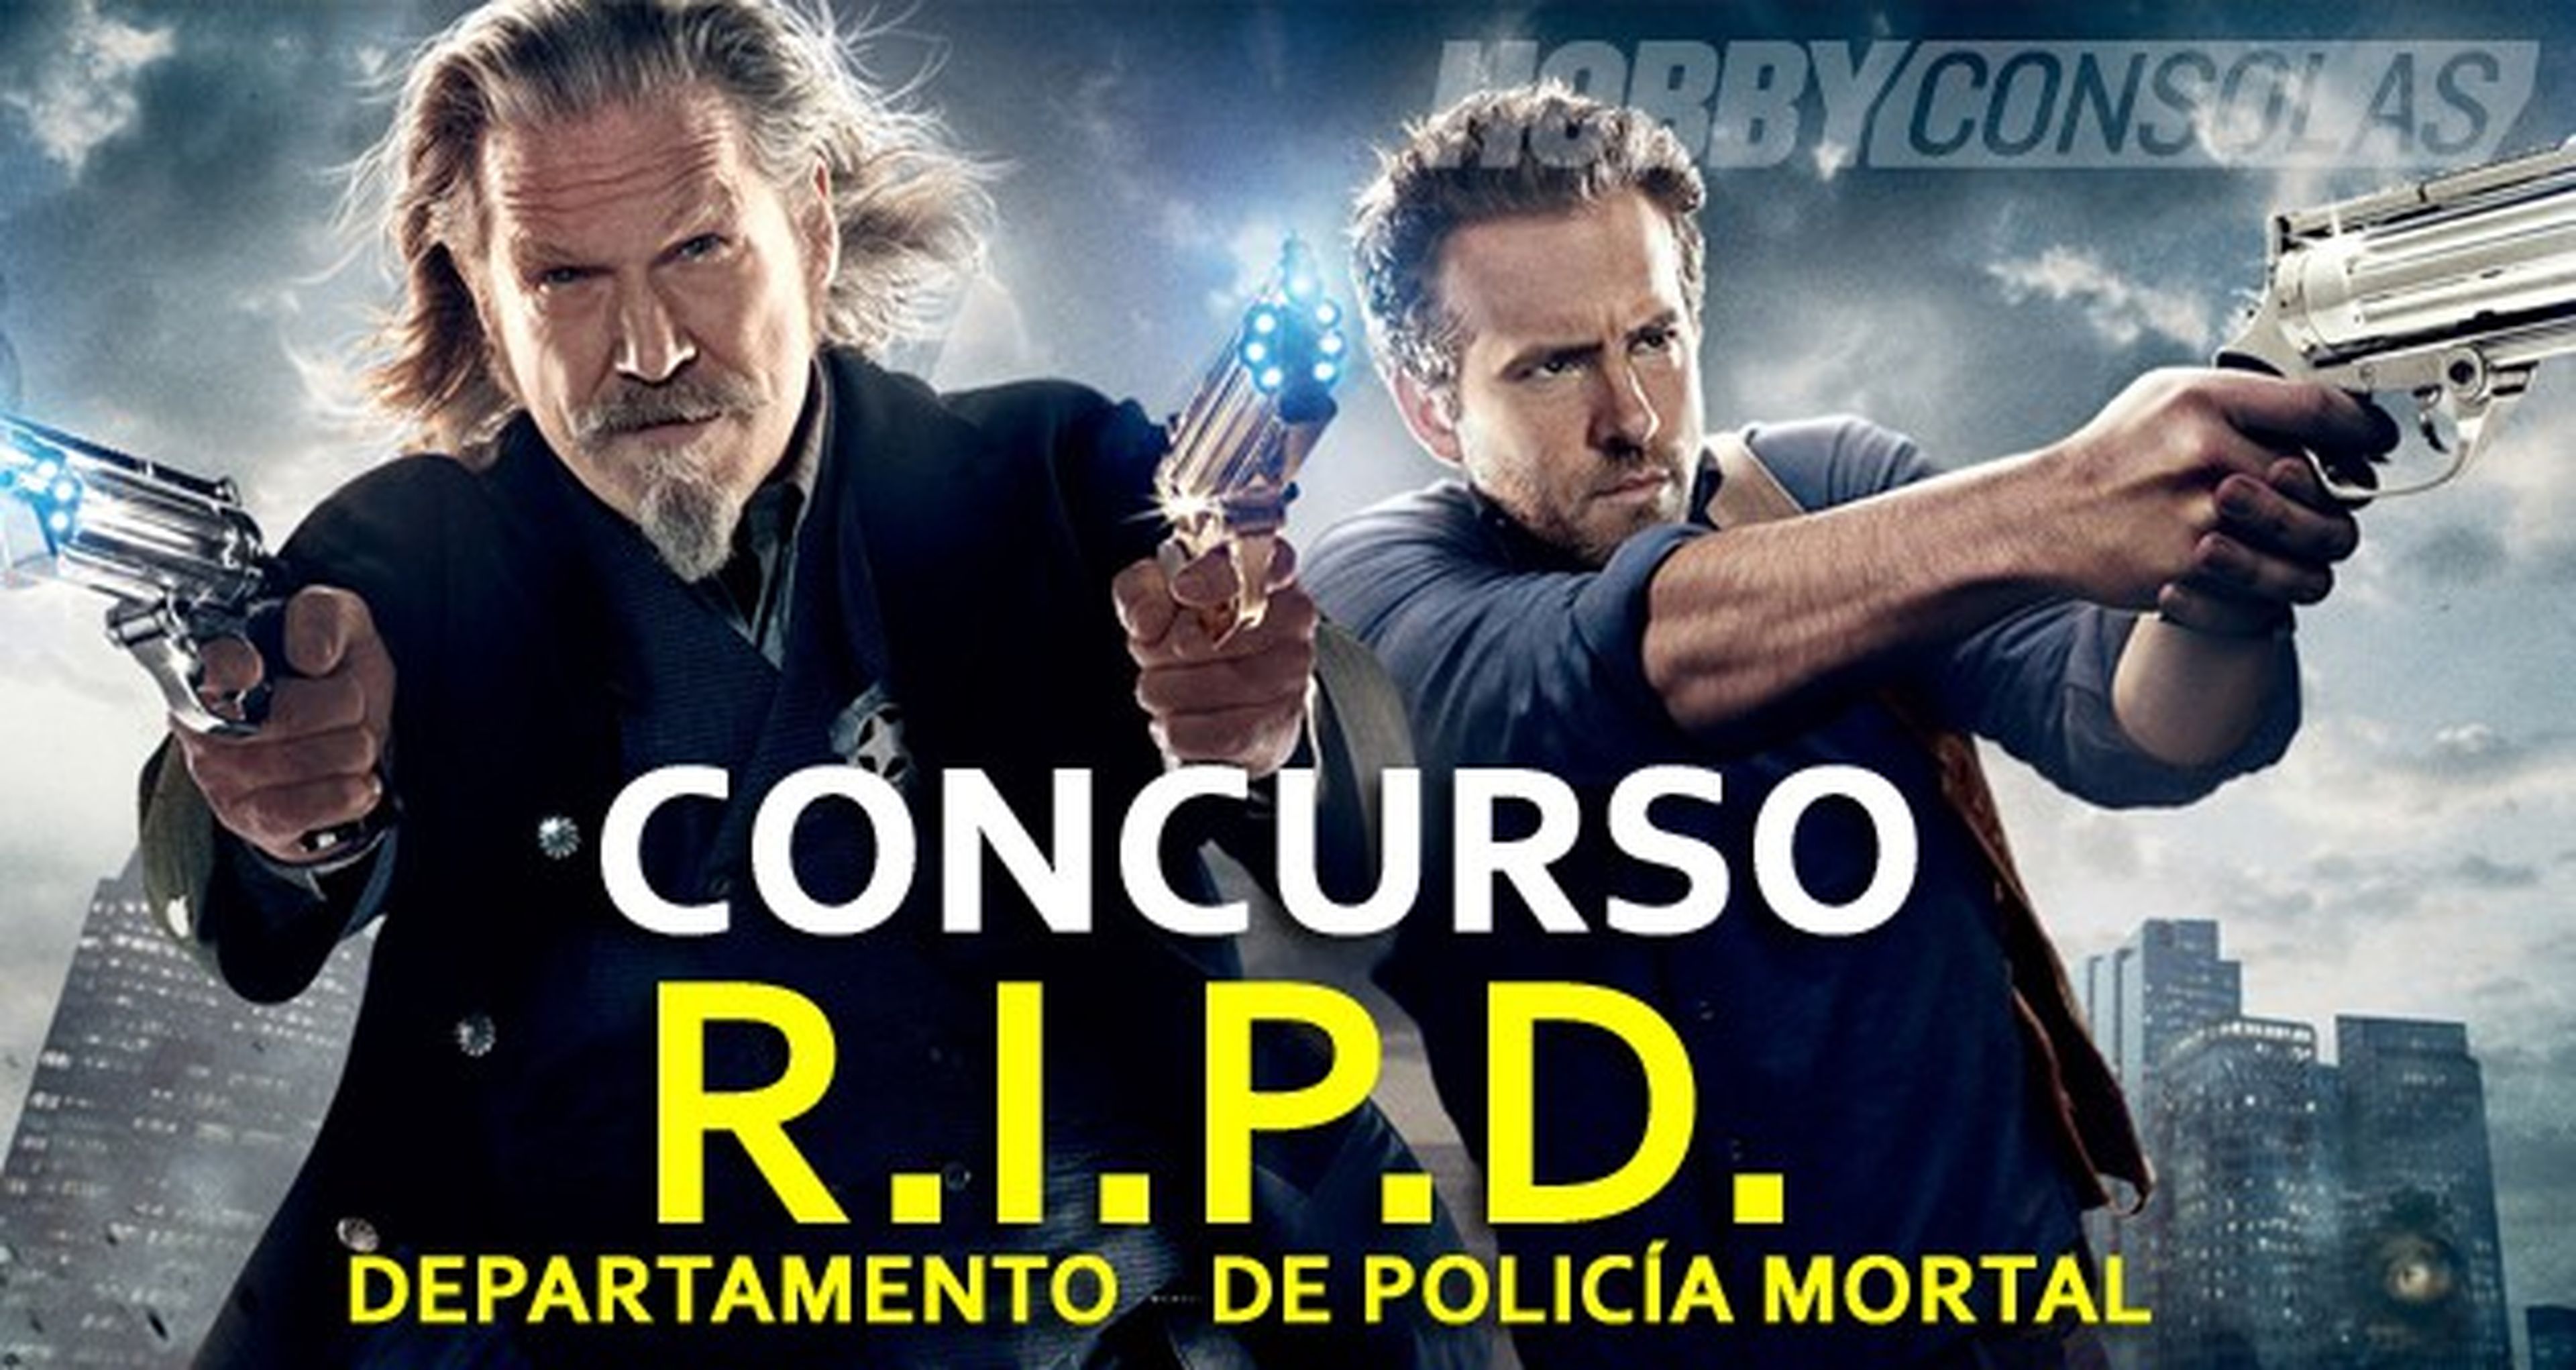 Concurso R.I.P.D. Departamento de Policía Mortal en DVD